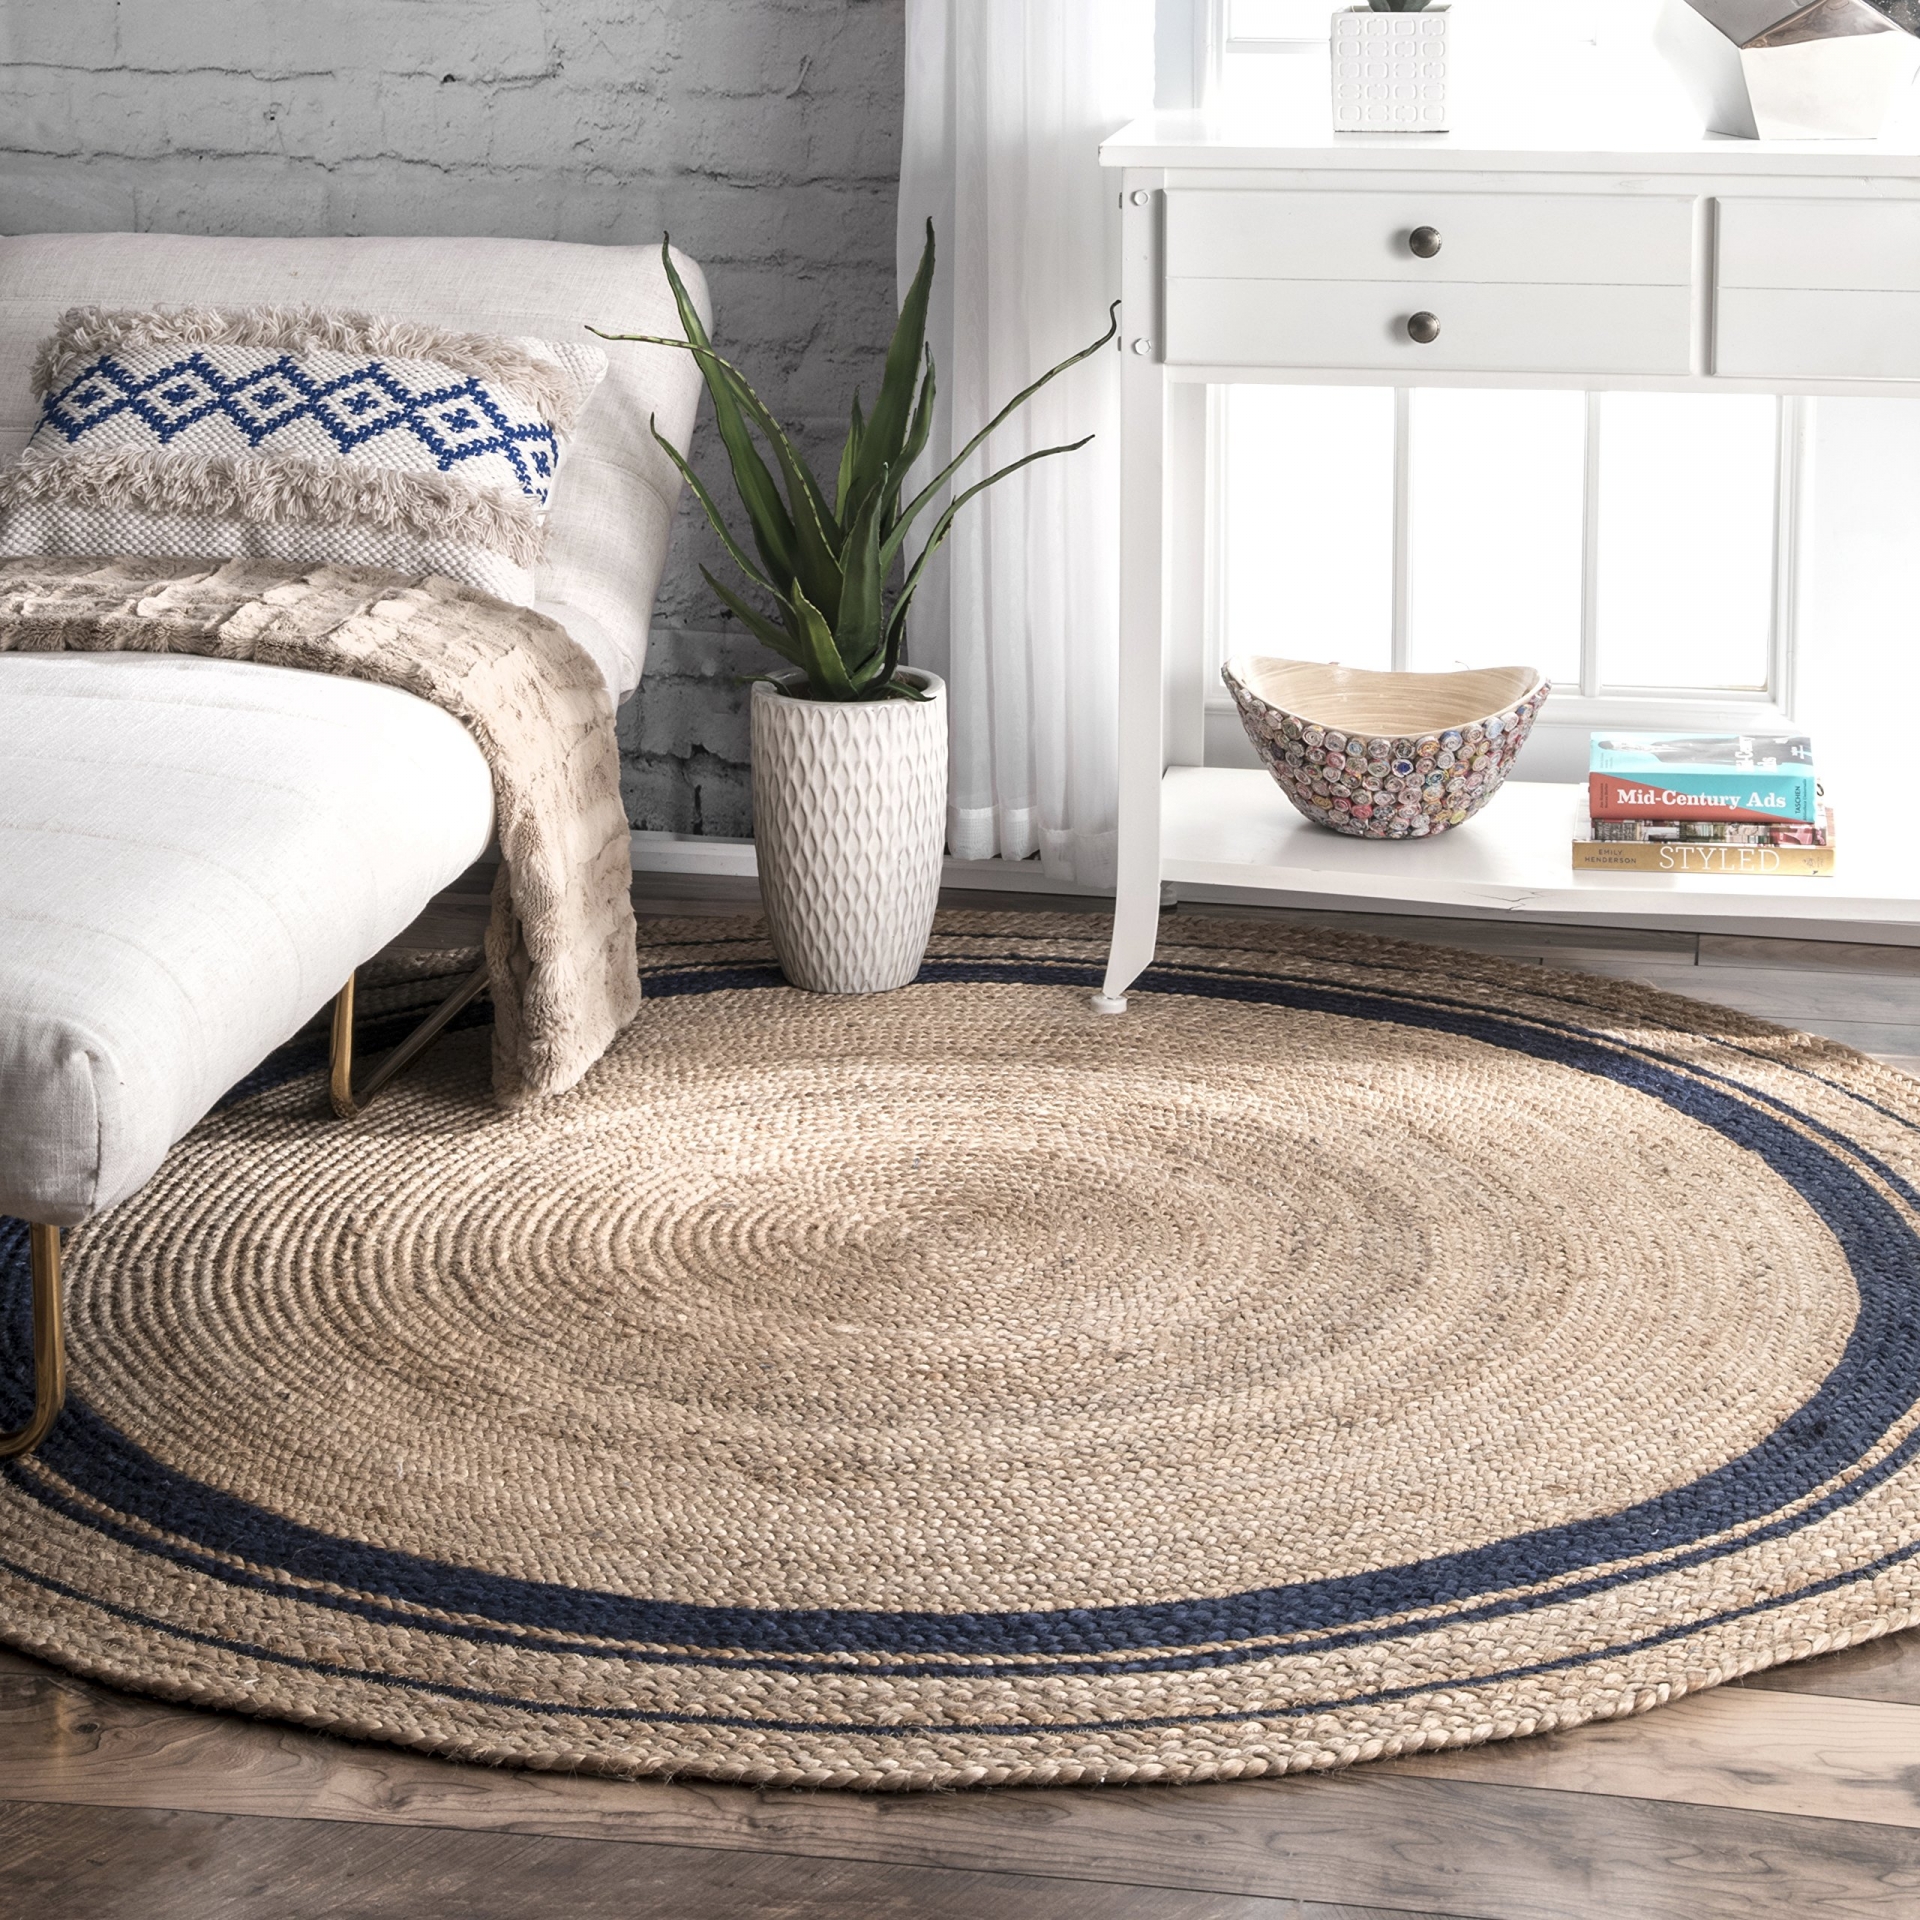 Trang trí nhà bằng thảm đan thủ công từ sợi tự nhiên là một cách mang thiên nhiên đến gần hơn với không gian sống.